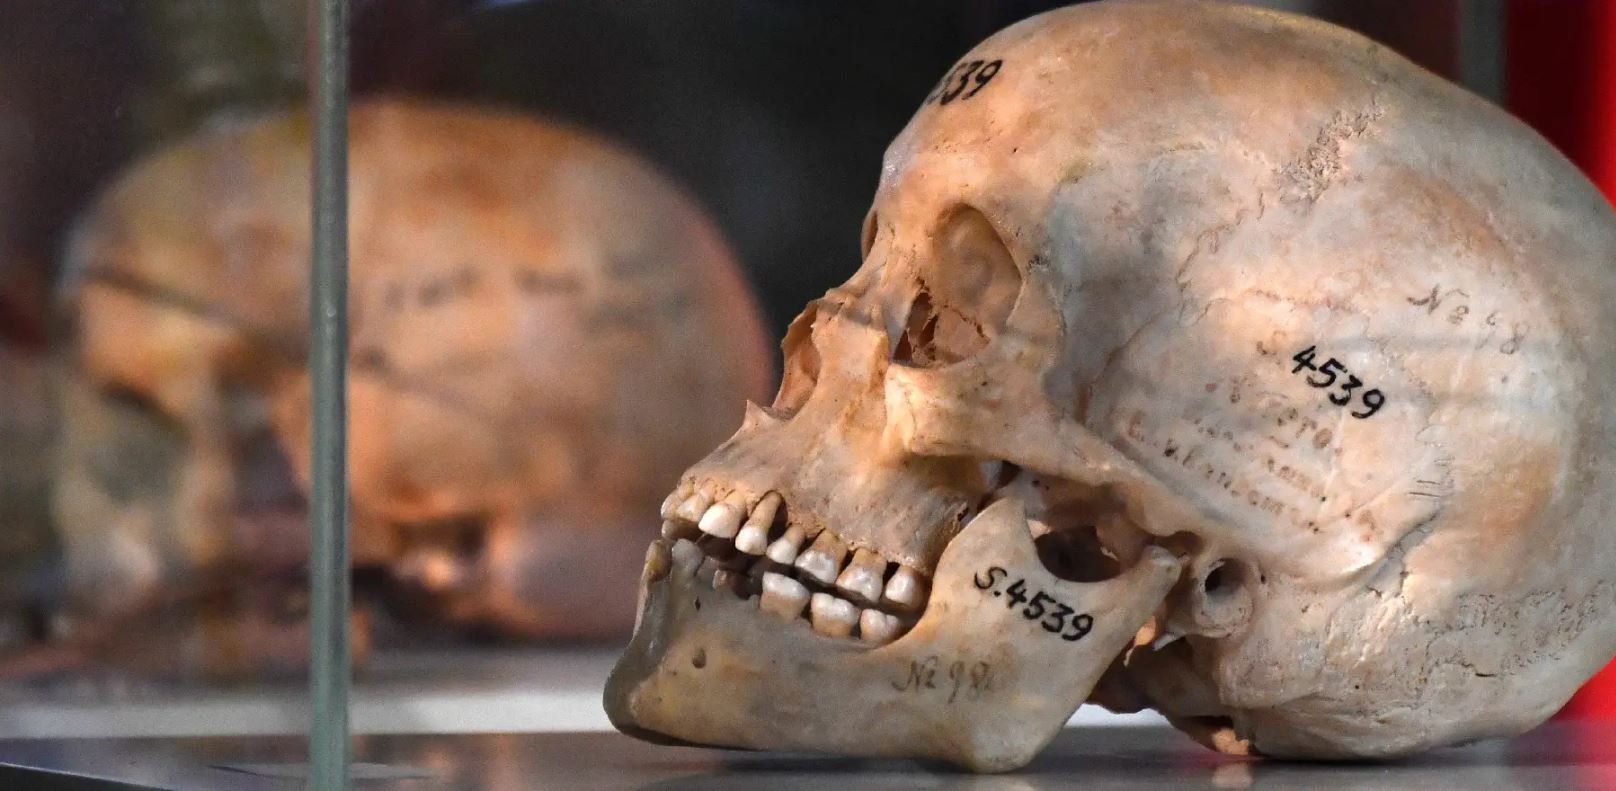 Deux crânes de victimes présumées du génocide opéré par les troupes allemandes en Namibie au début du XXe siècle sont exposés dans une église à Berlin, le 29 août 2018